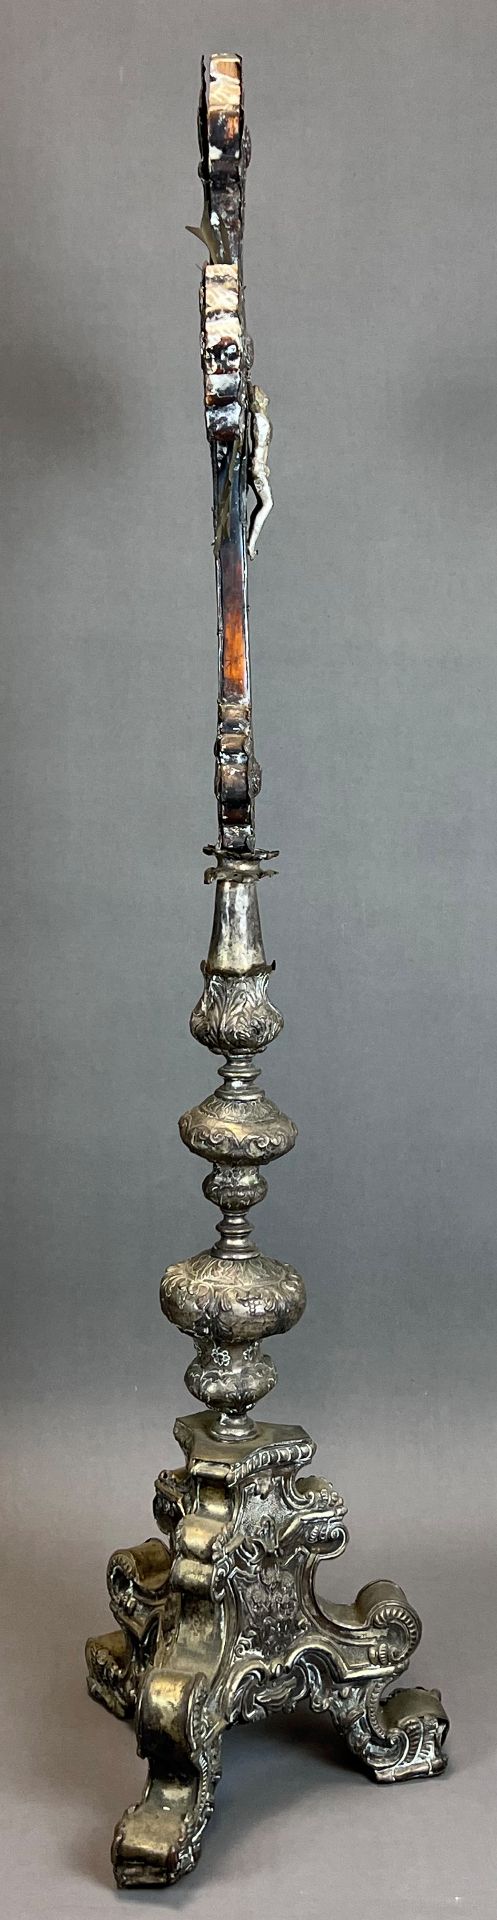 Großes Standkreuz. Altarkreuz. Um 1700. Frankreich. - Bild 11 aus 16